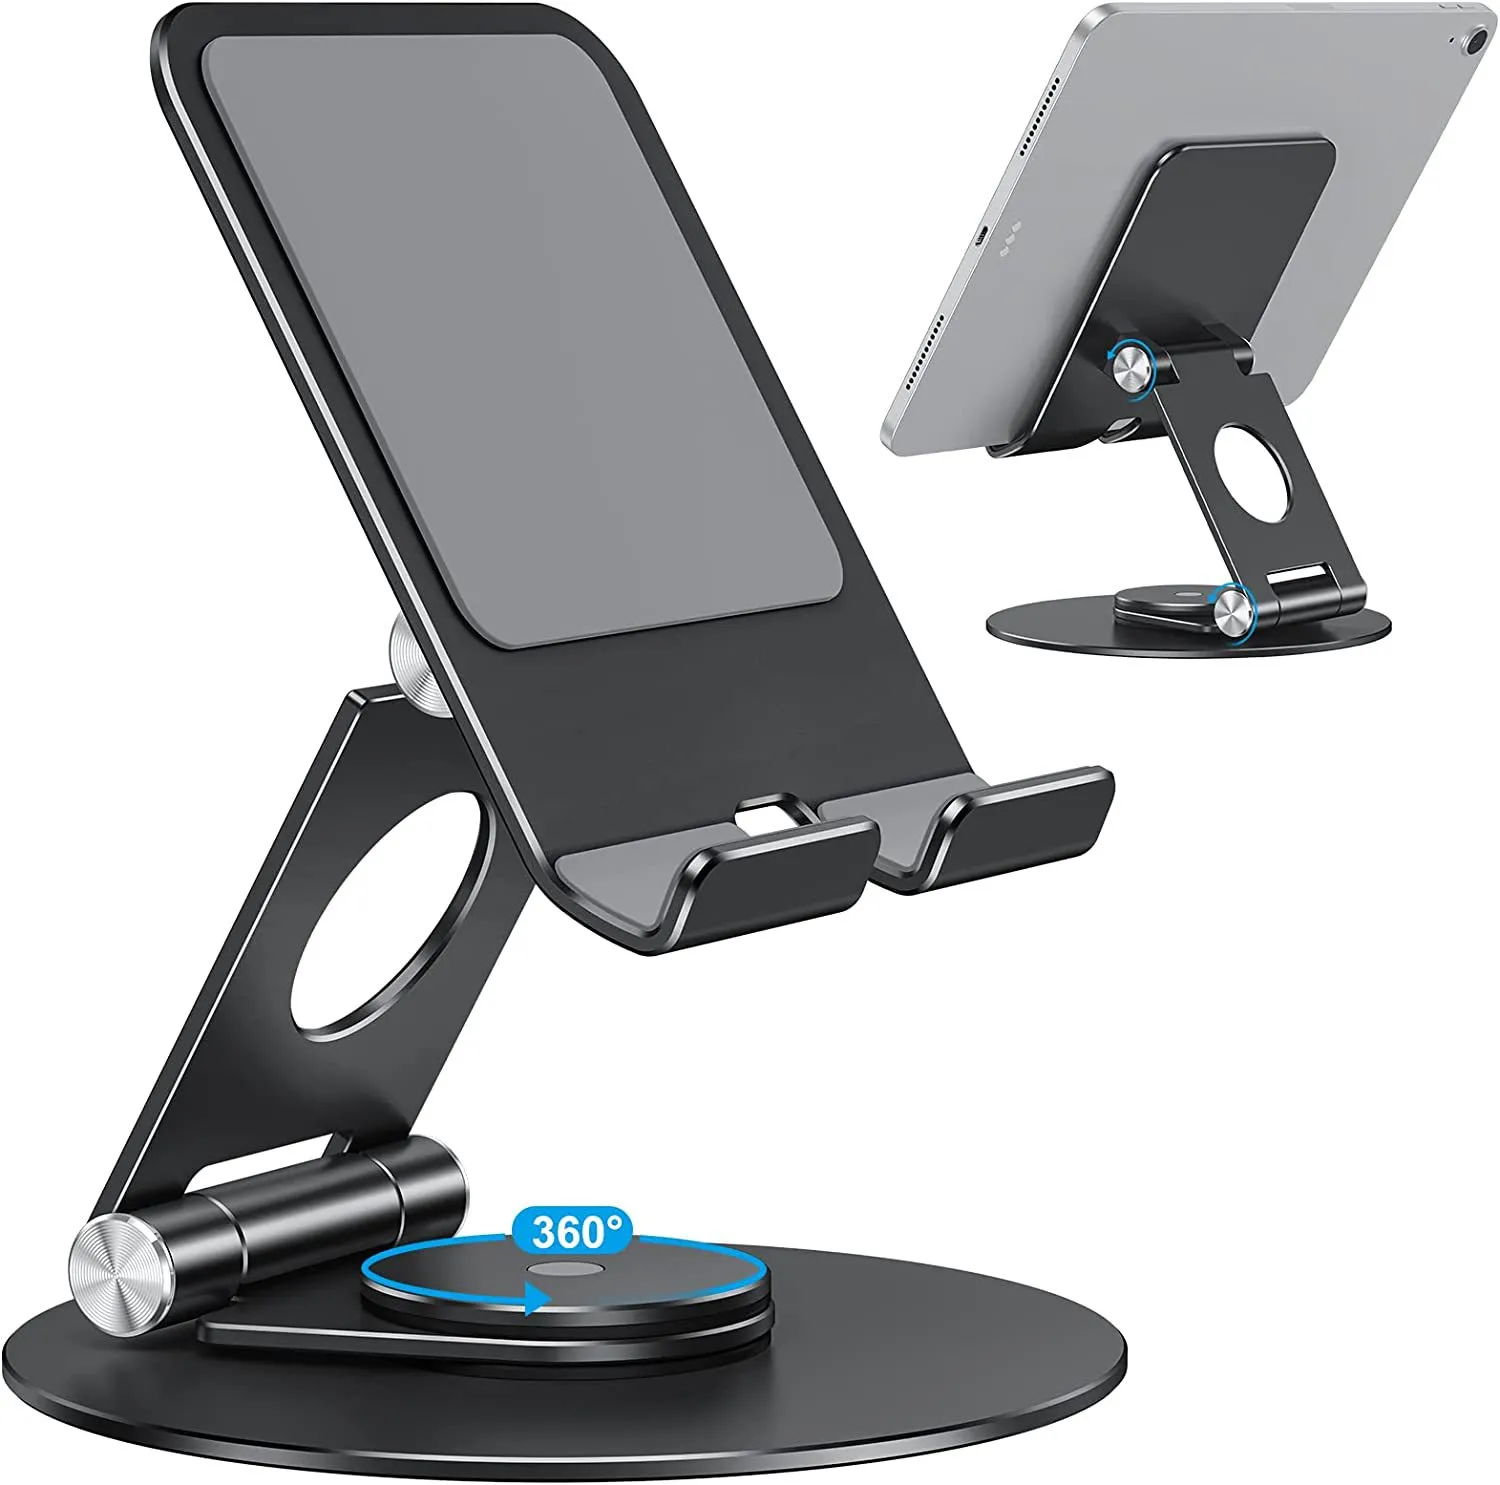 Stojak na tablet na stacjonarne stojak aluminiowy stojak na iPad3 4 2 Mini telefon komórkowy